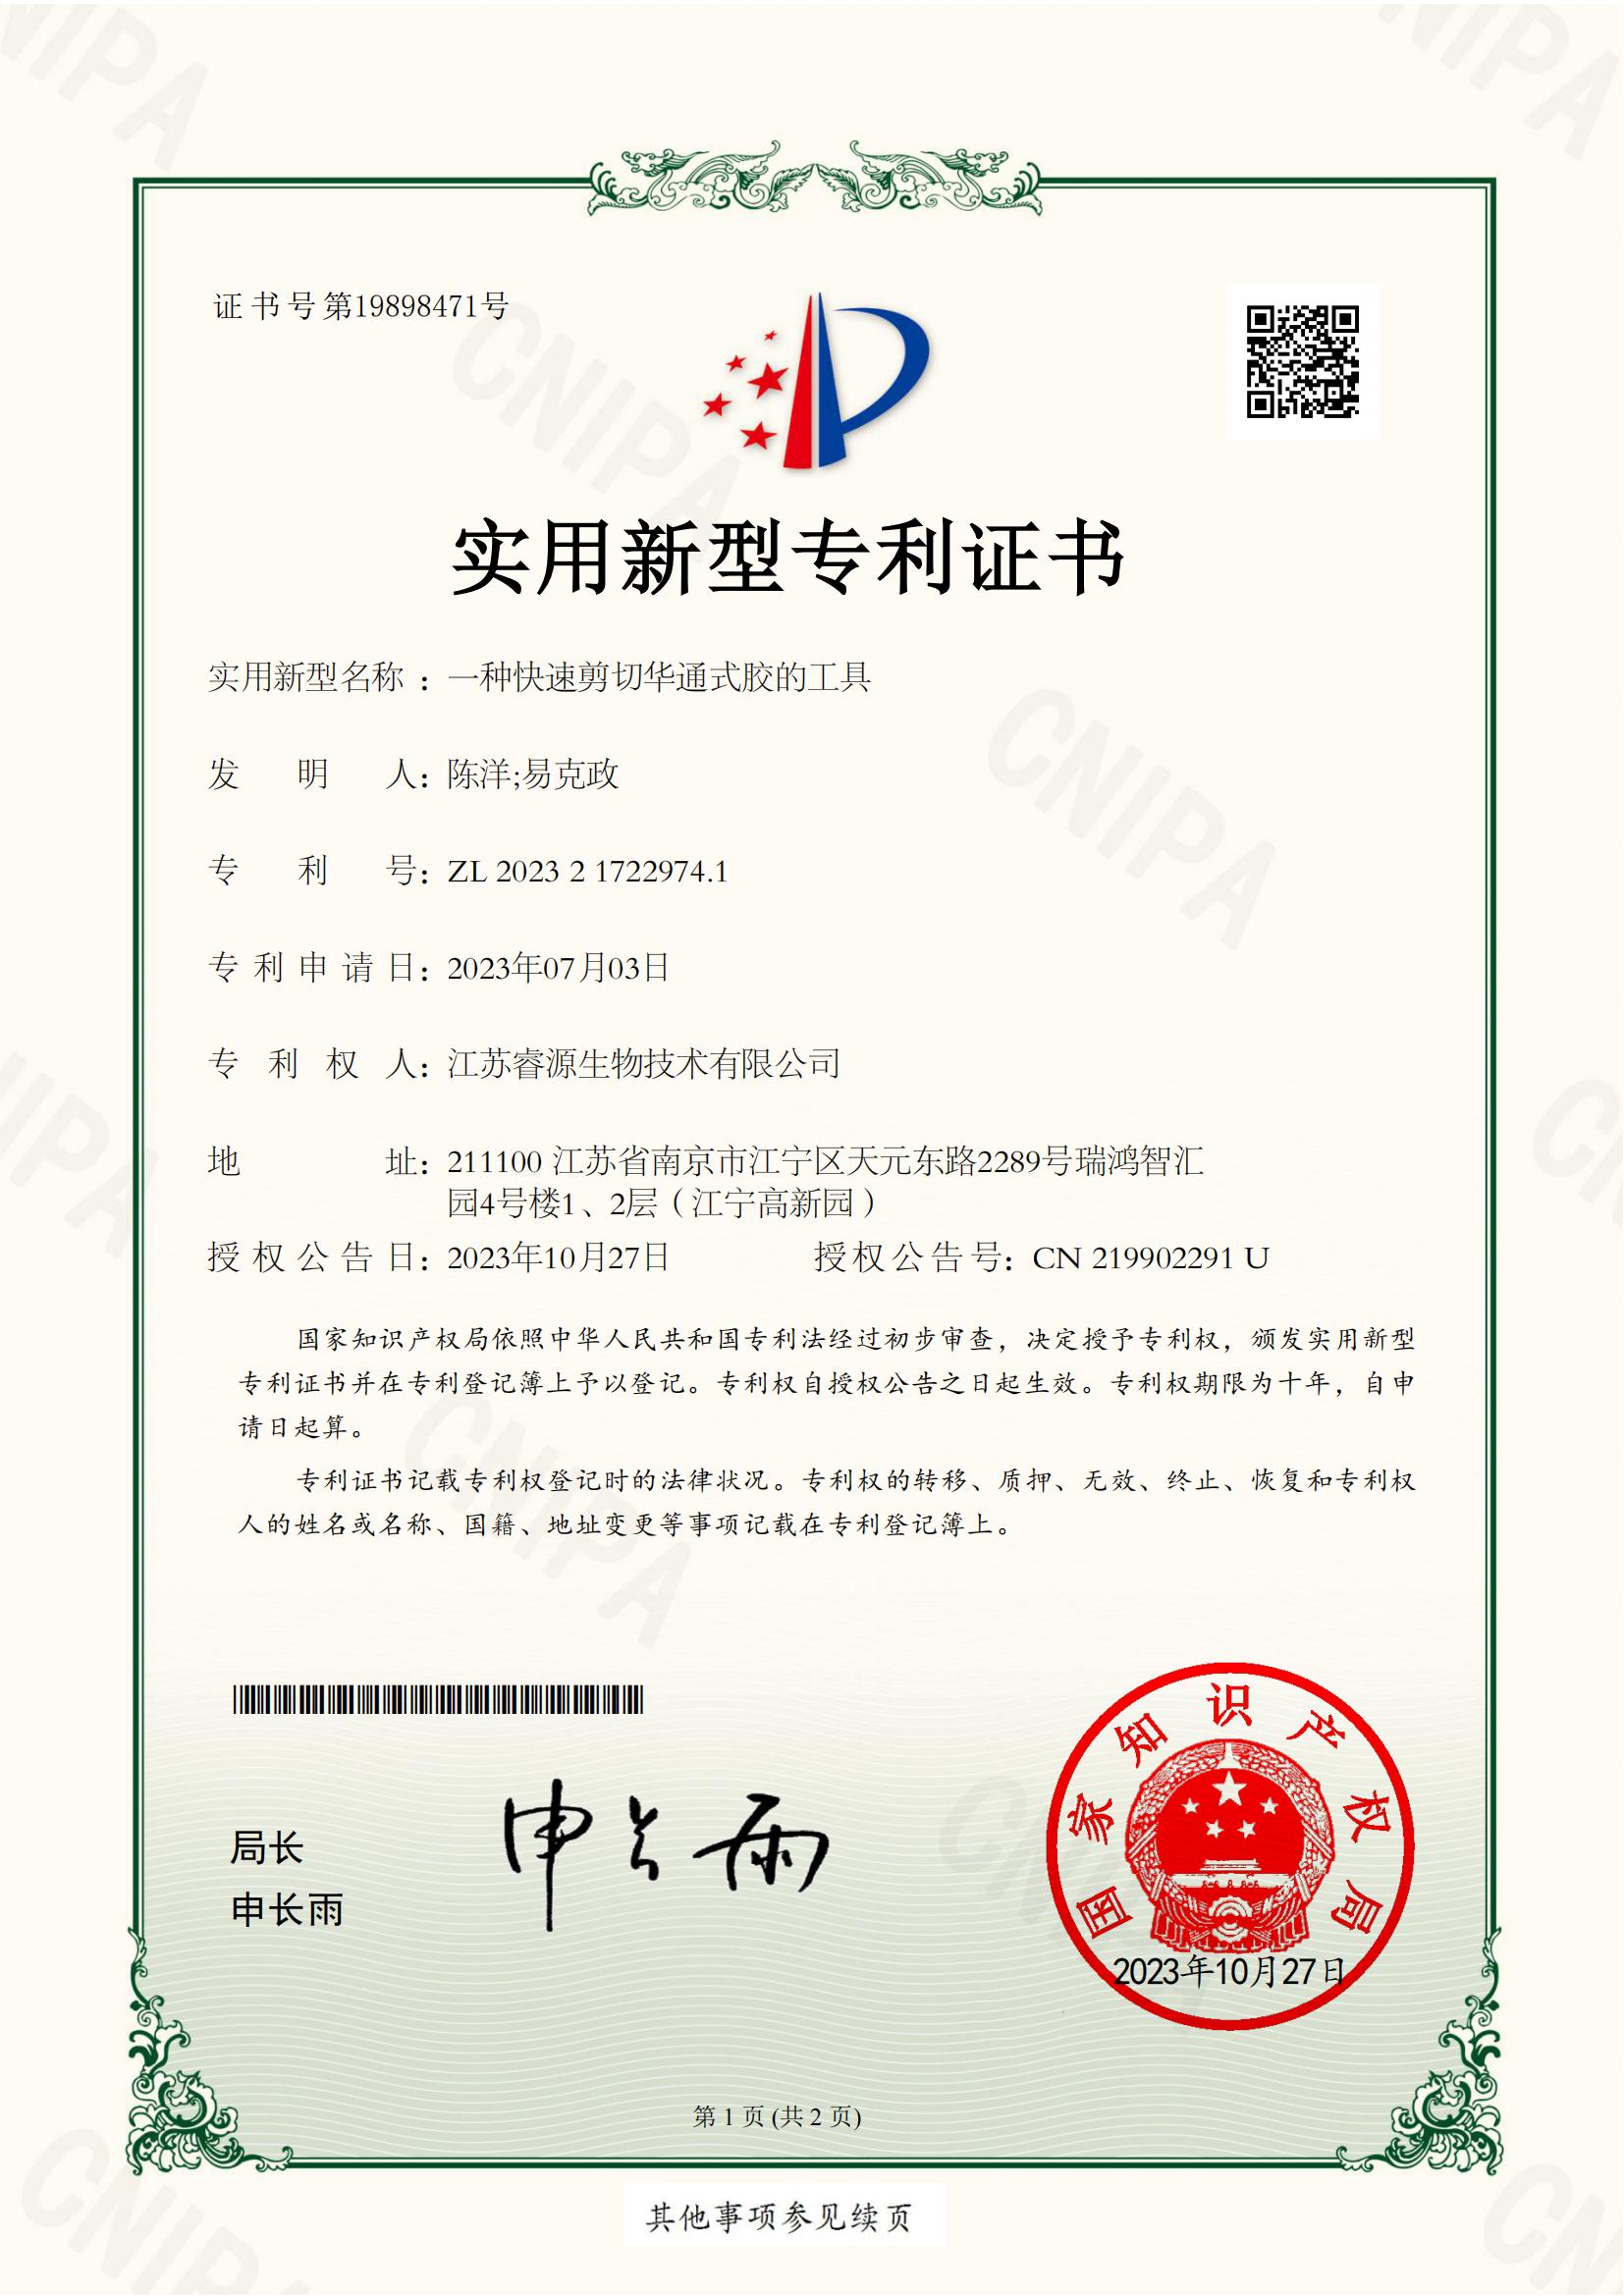 2.NJJIP2-20236-019思-实用新型专利证书_00